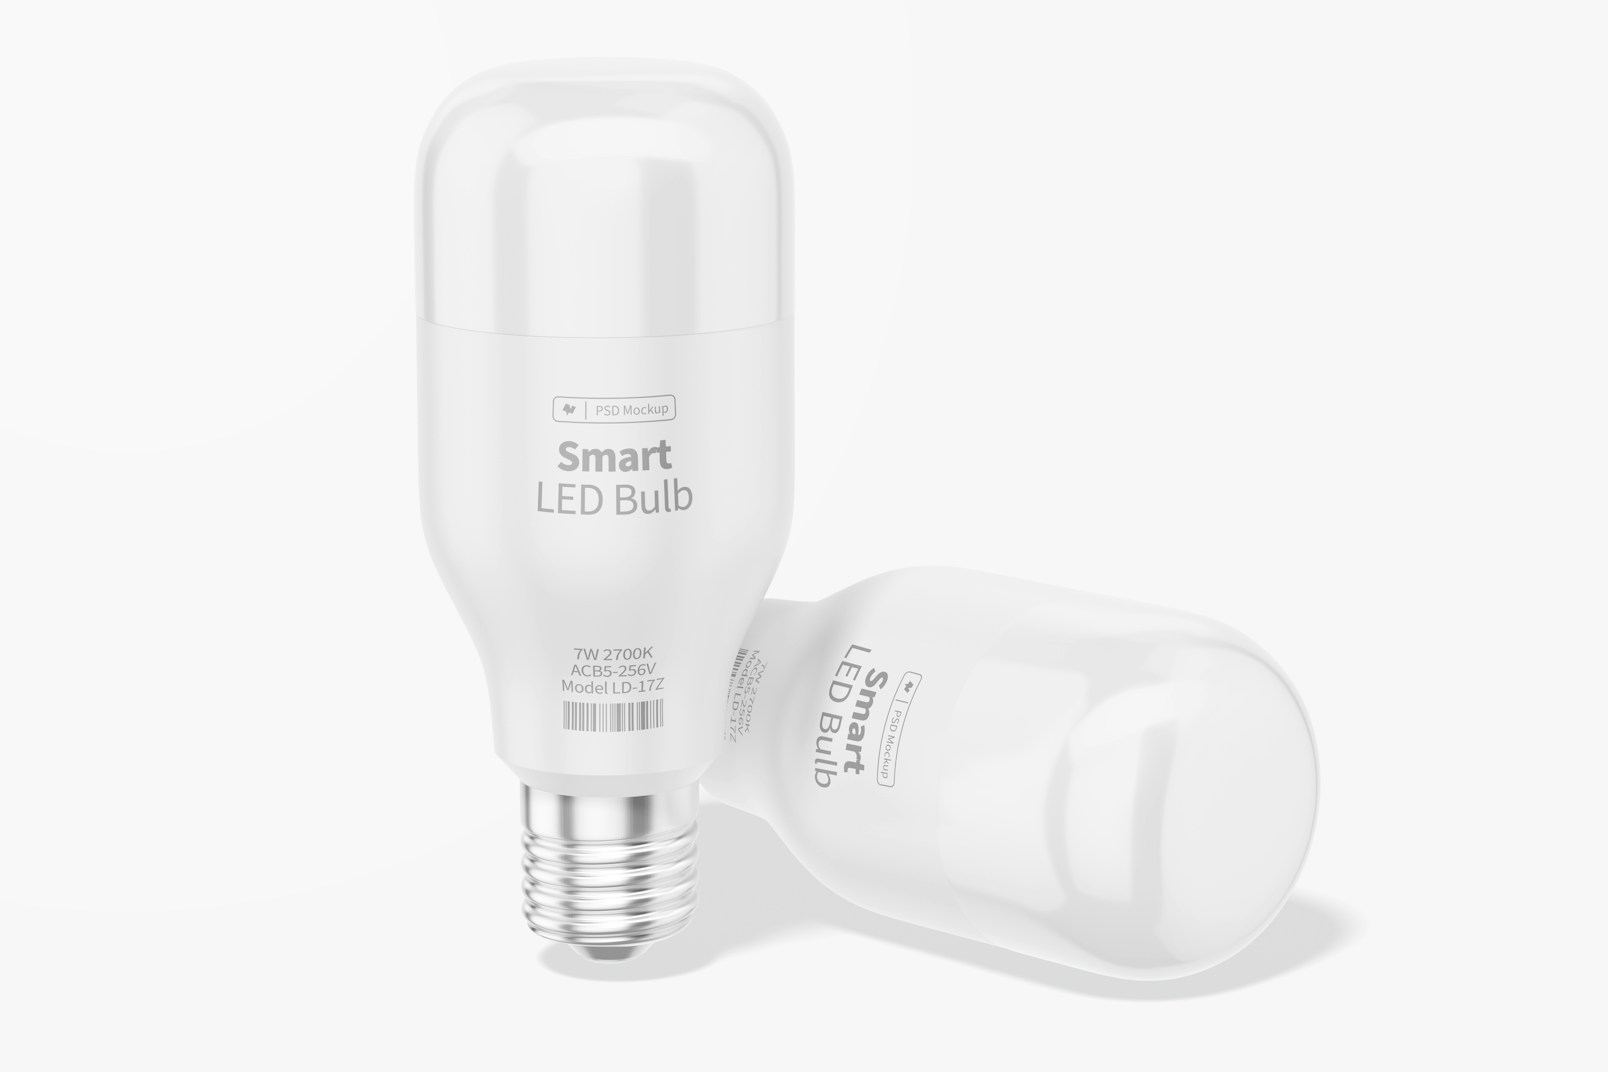 Maqueta de Bombillos Inteligentes LED, De Píe y Caído